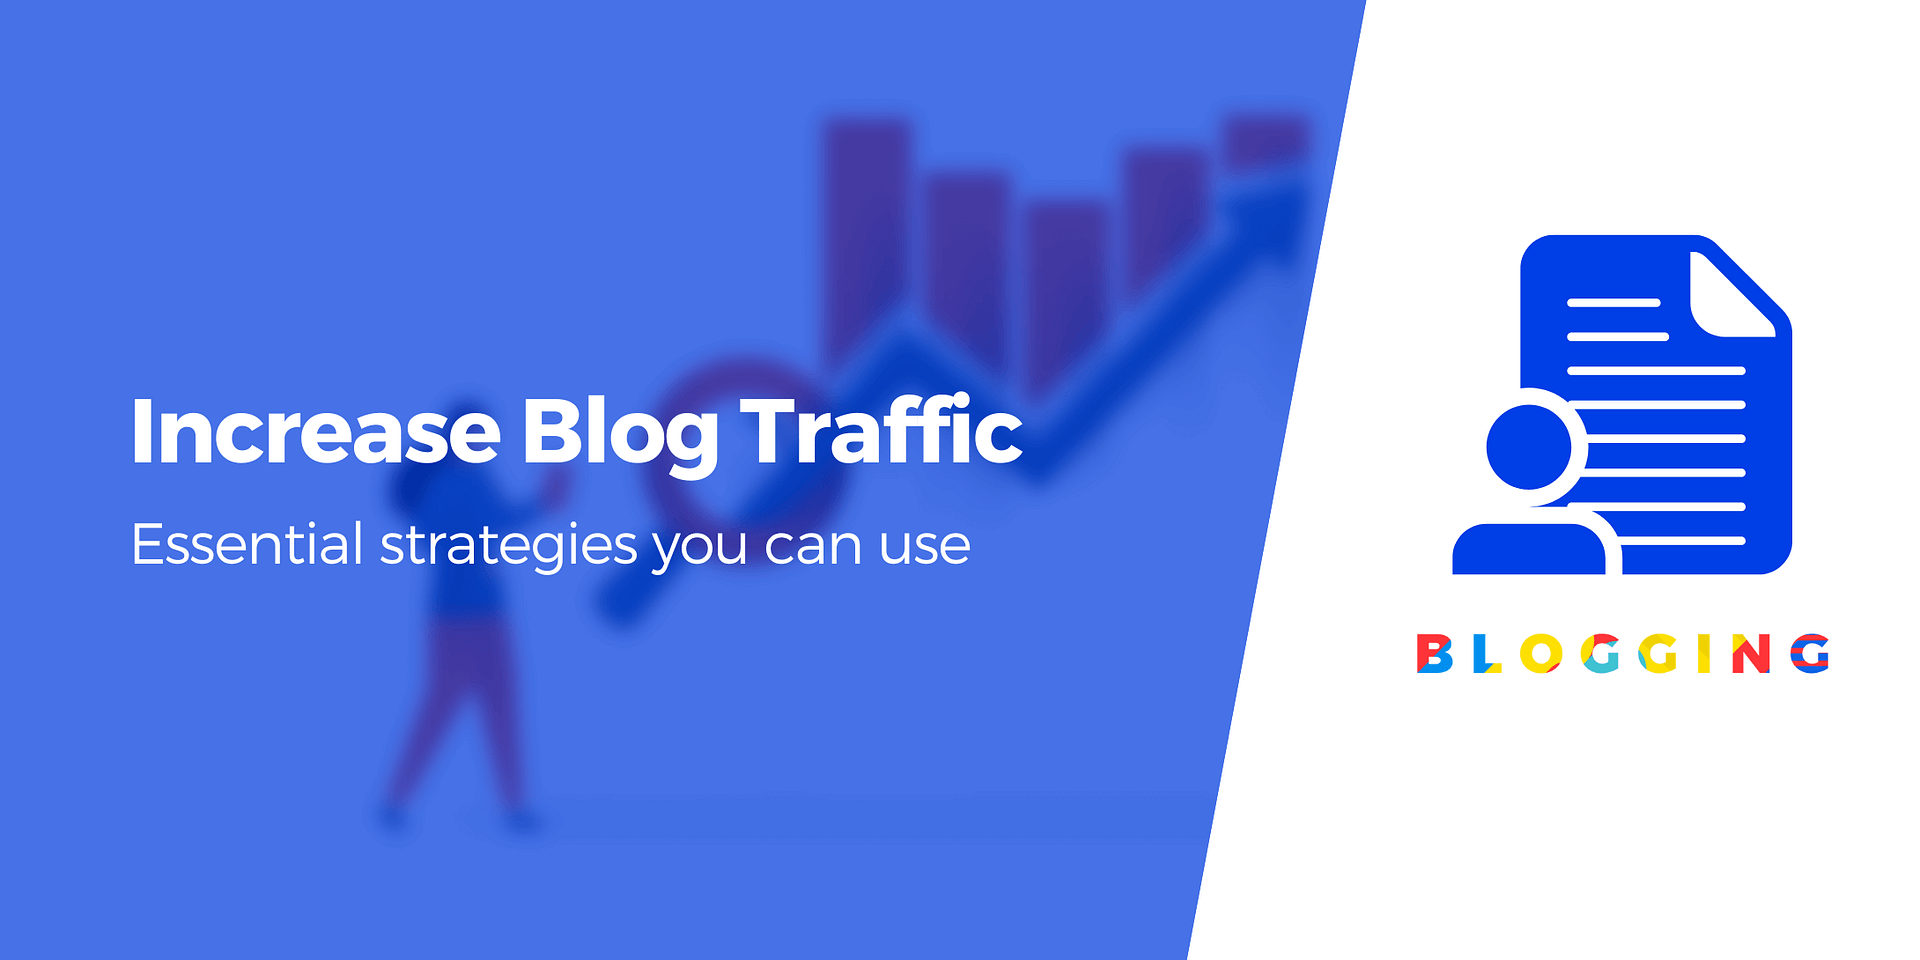 7 Free Ways to Increase Blog Traffic